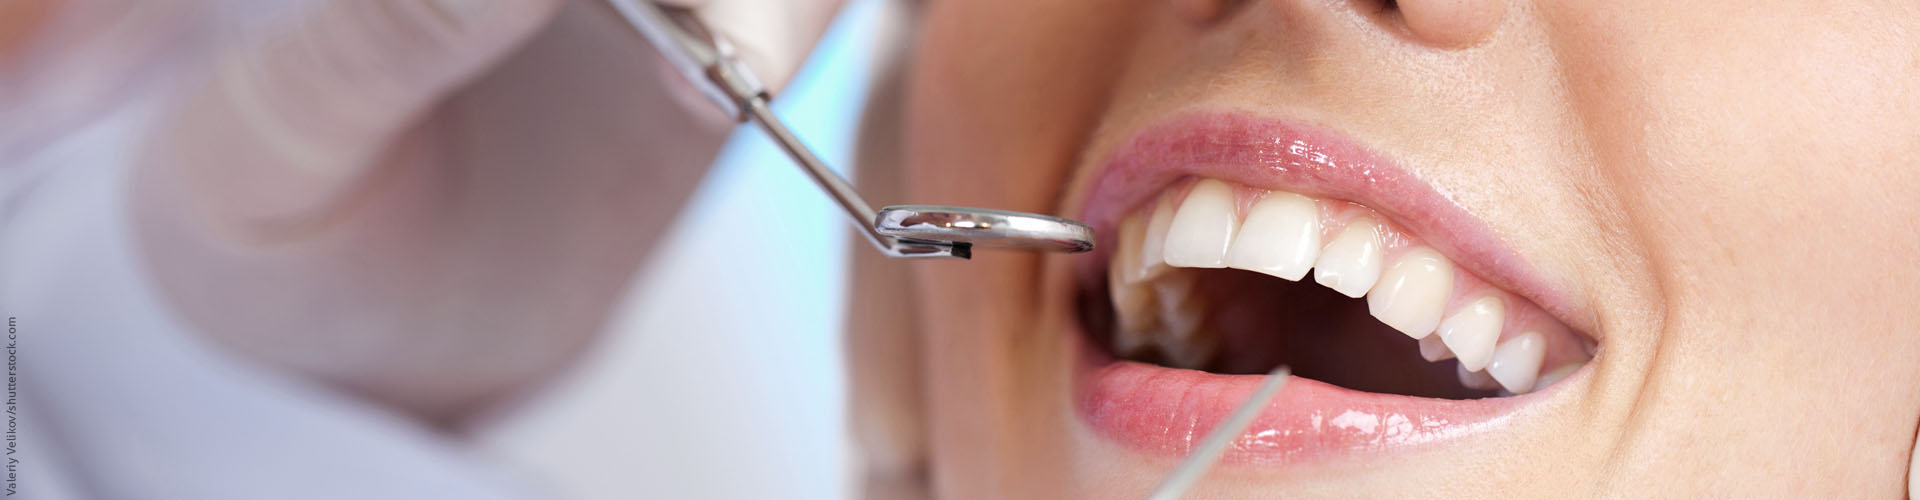 Erhaltung des Zahnstandes nach kieferorthopädischer Behandlung